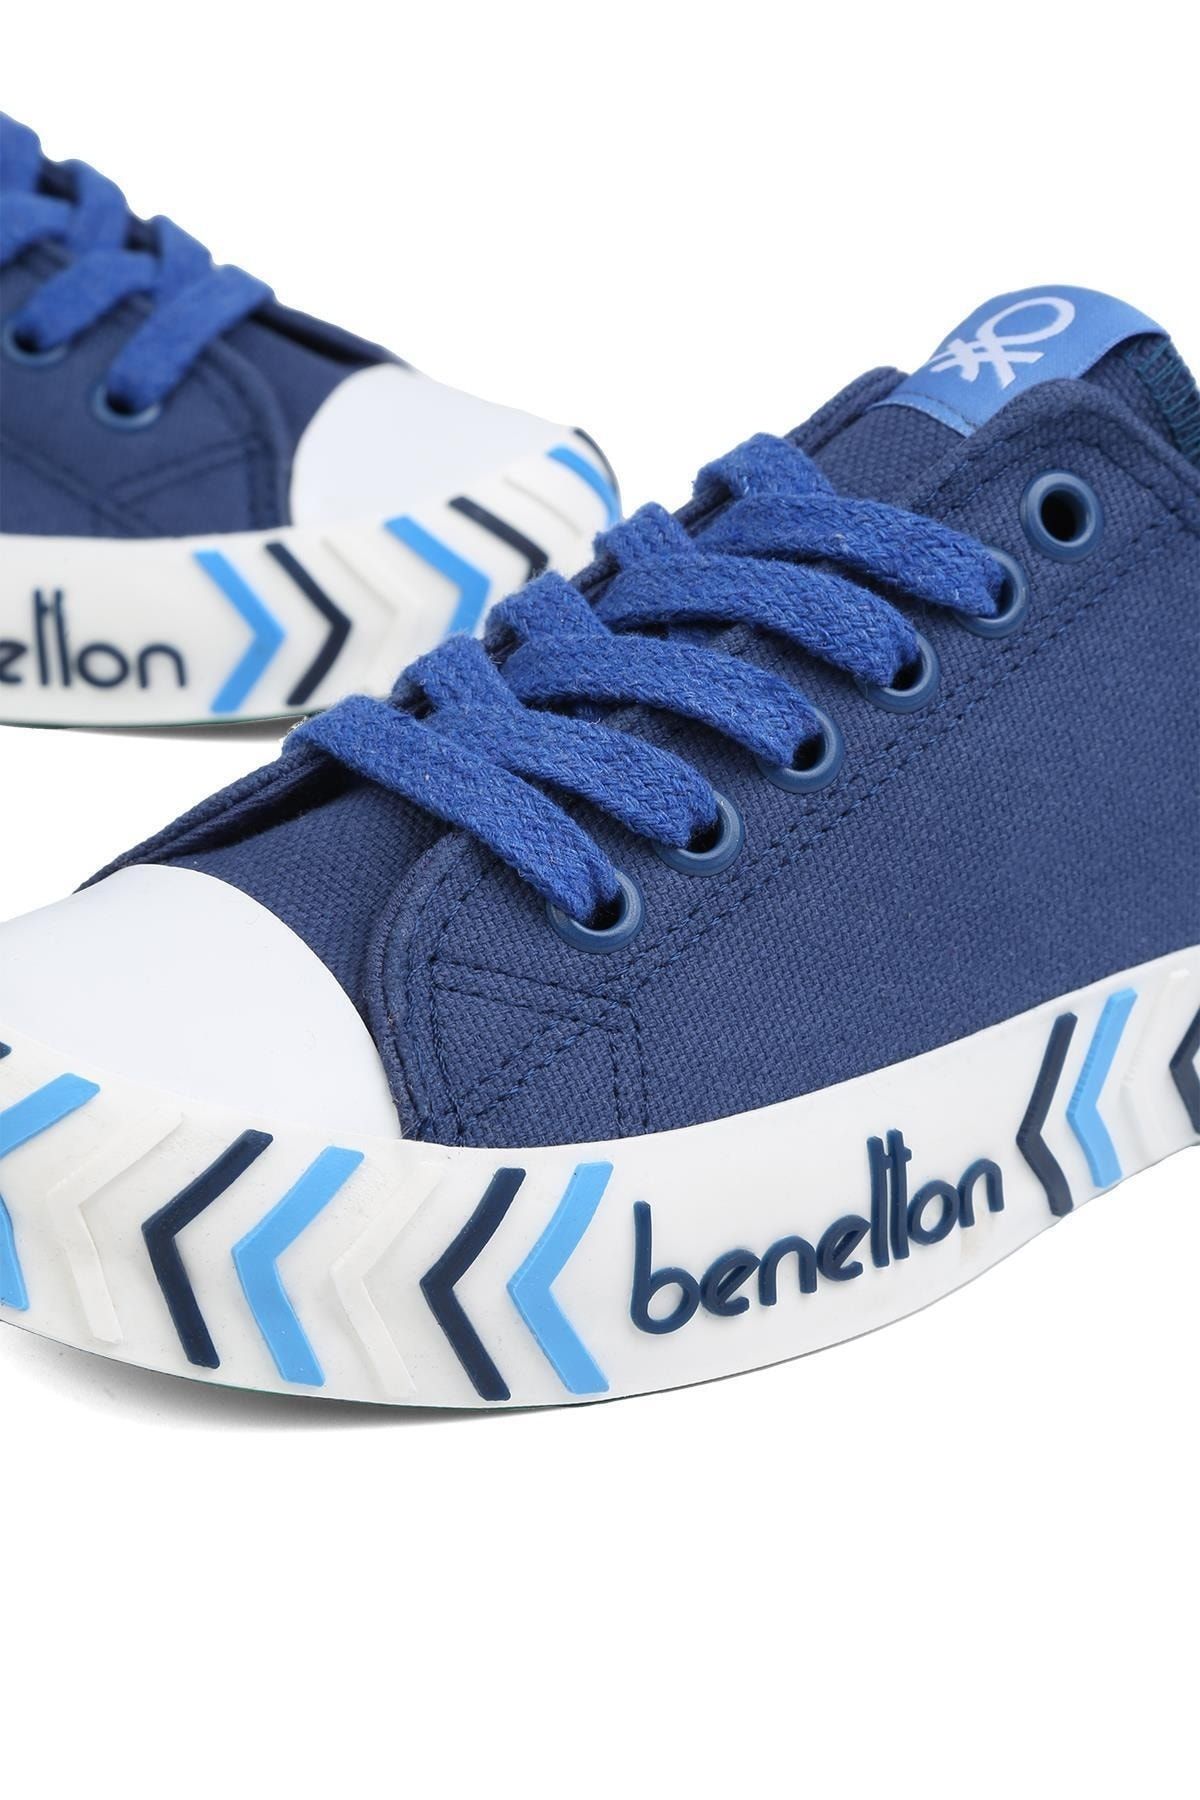 Benetton ® |BN-90626- Lacivert - Erkek Spor Ayakkabı